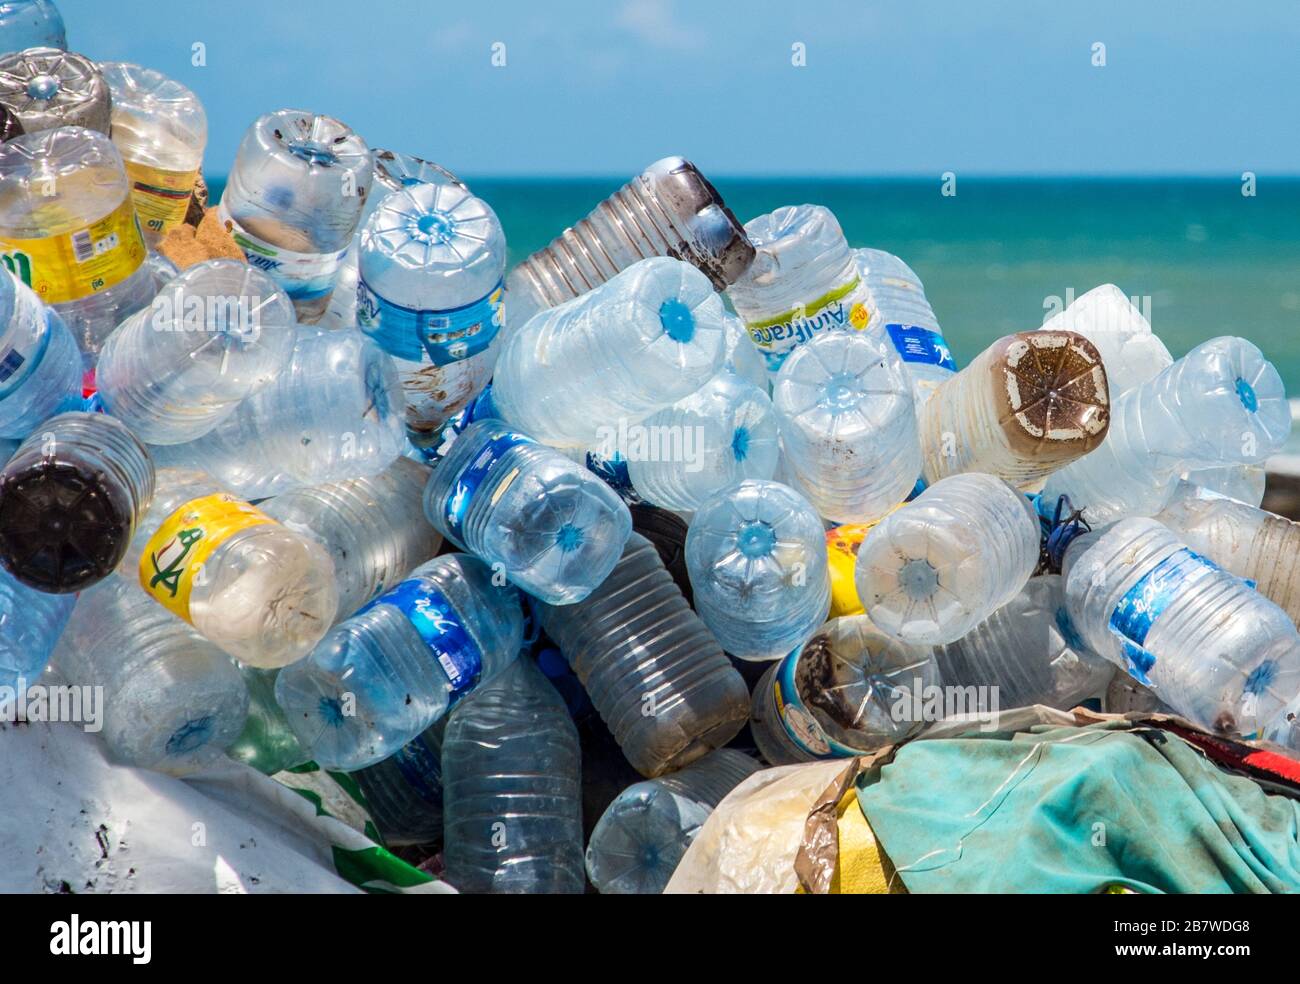 https://c8.alamy.com/compes/2b7wdg8/un-monton-de-botellas-de-agua-de-plastico-en-una-playa-marroqui-2b7wdg8.jpg